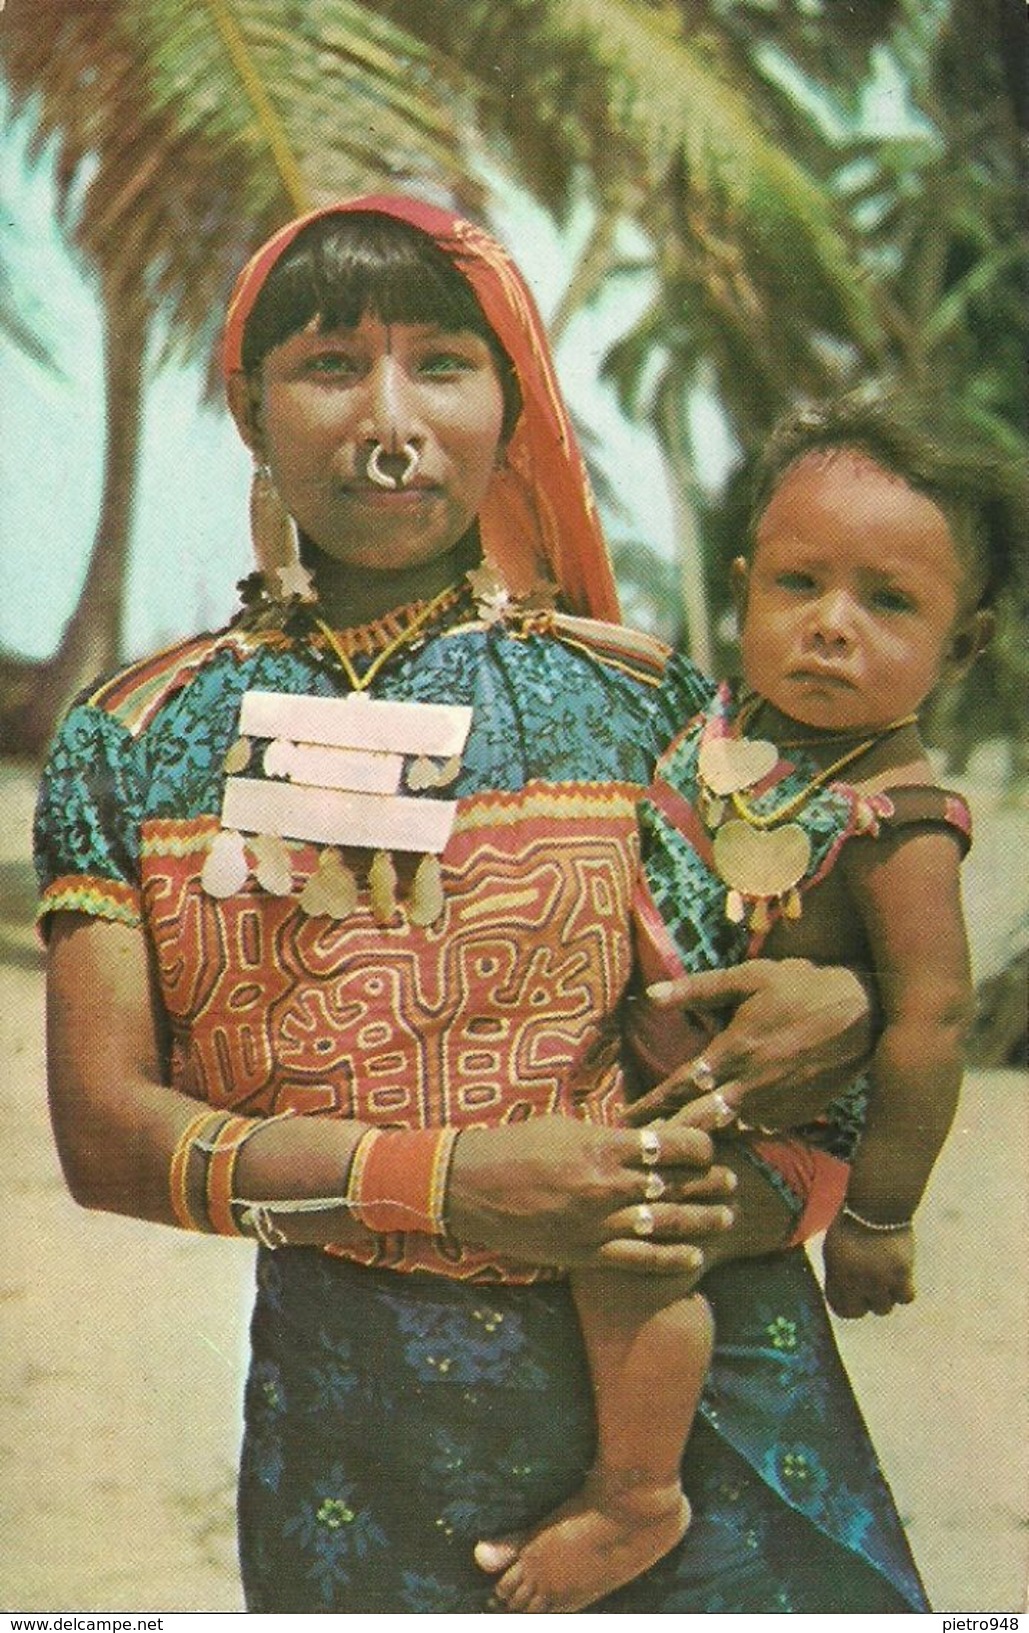 Republica De Panama, Islas San Blas, India Kuna Con Su Hijo, Kuna Indian Woman With Her Son In Dresses And Adornments - Panama